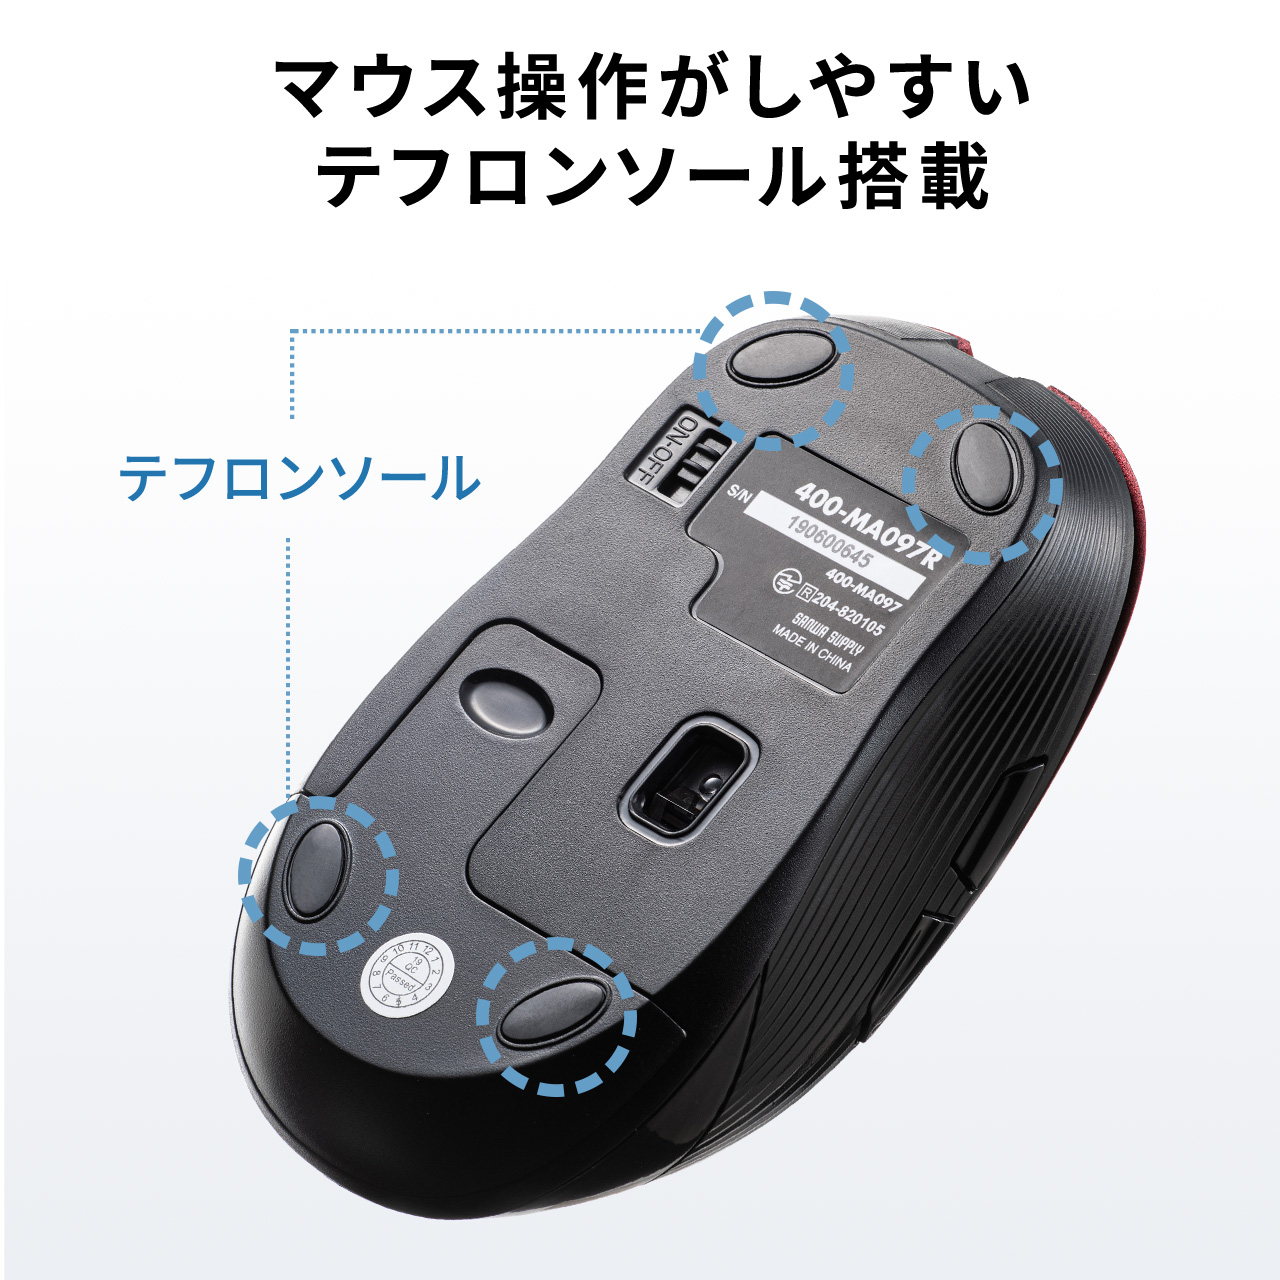 【楽天市場】マウス ワイヤレス 無線 マウス 5ボタン ワイヤレス